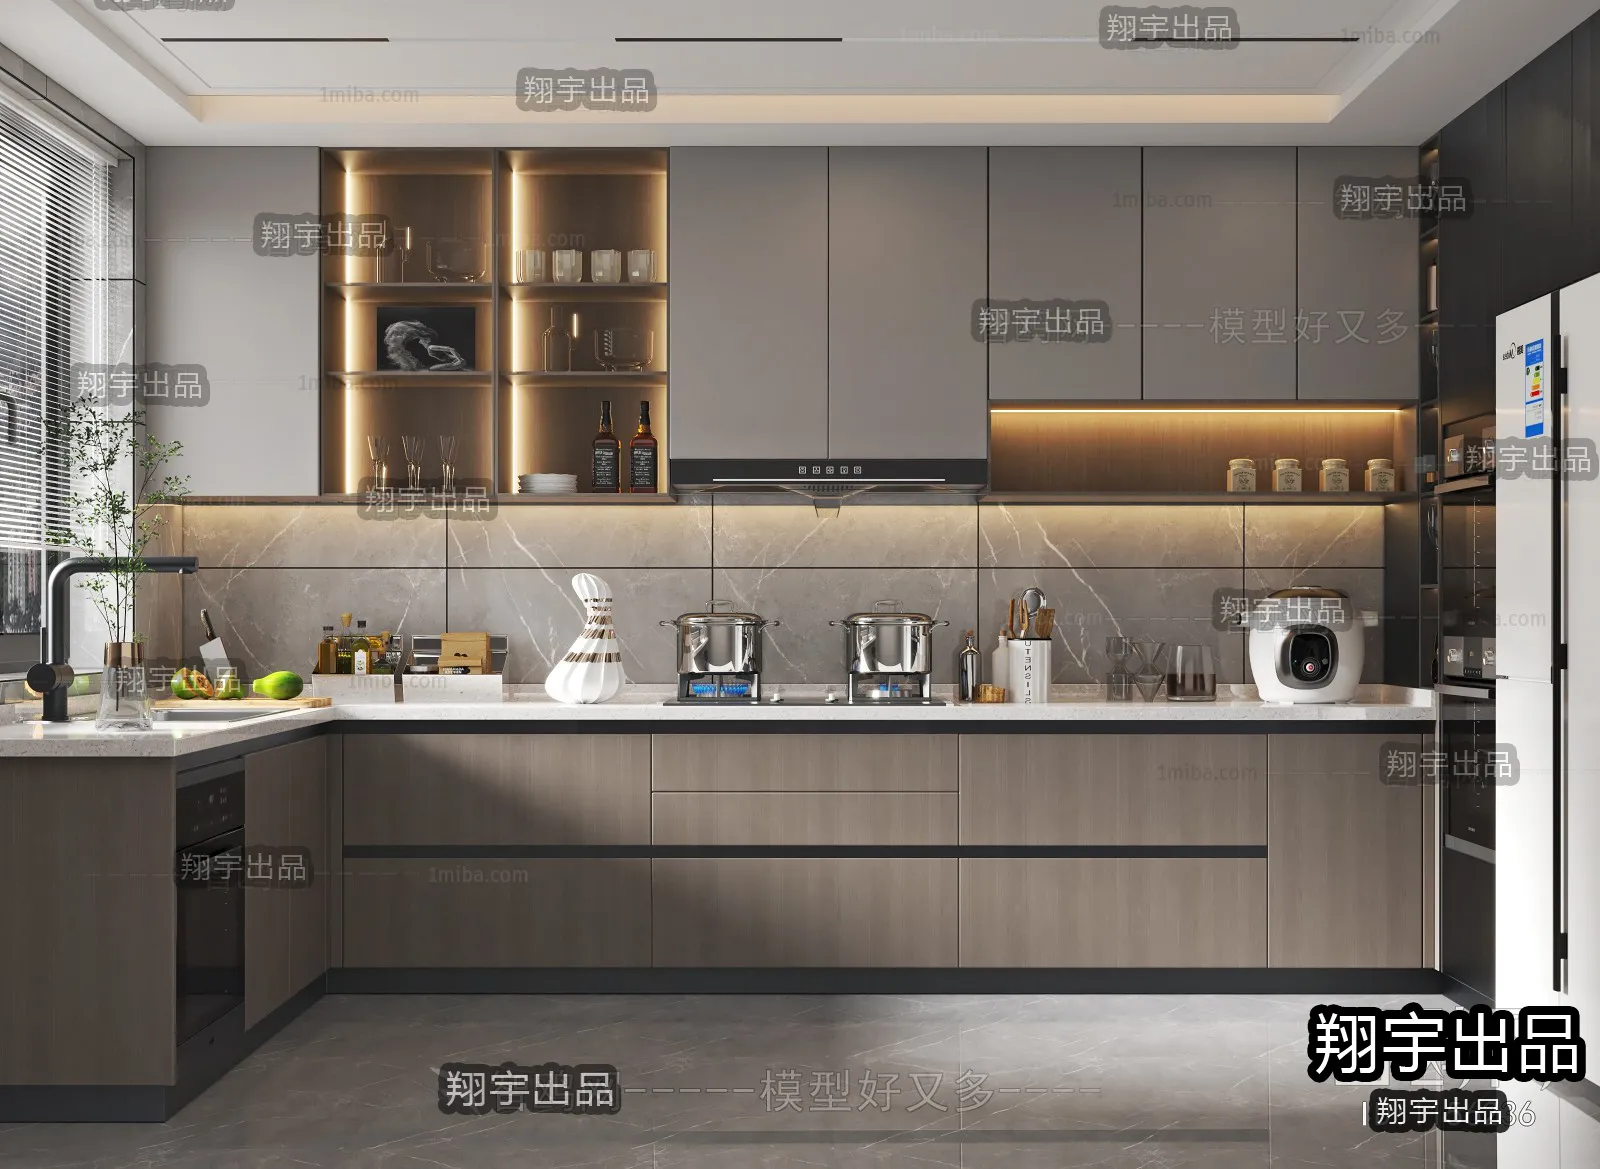 Kitchen – Modern Interior Design – 3D Models – 007